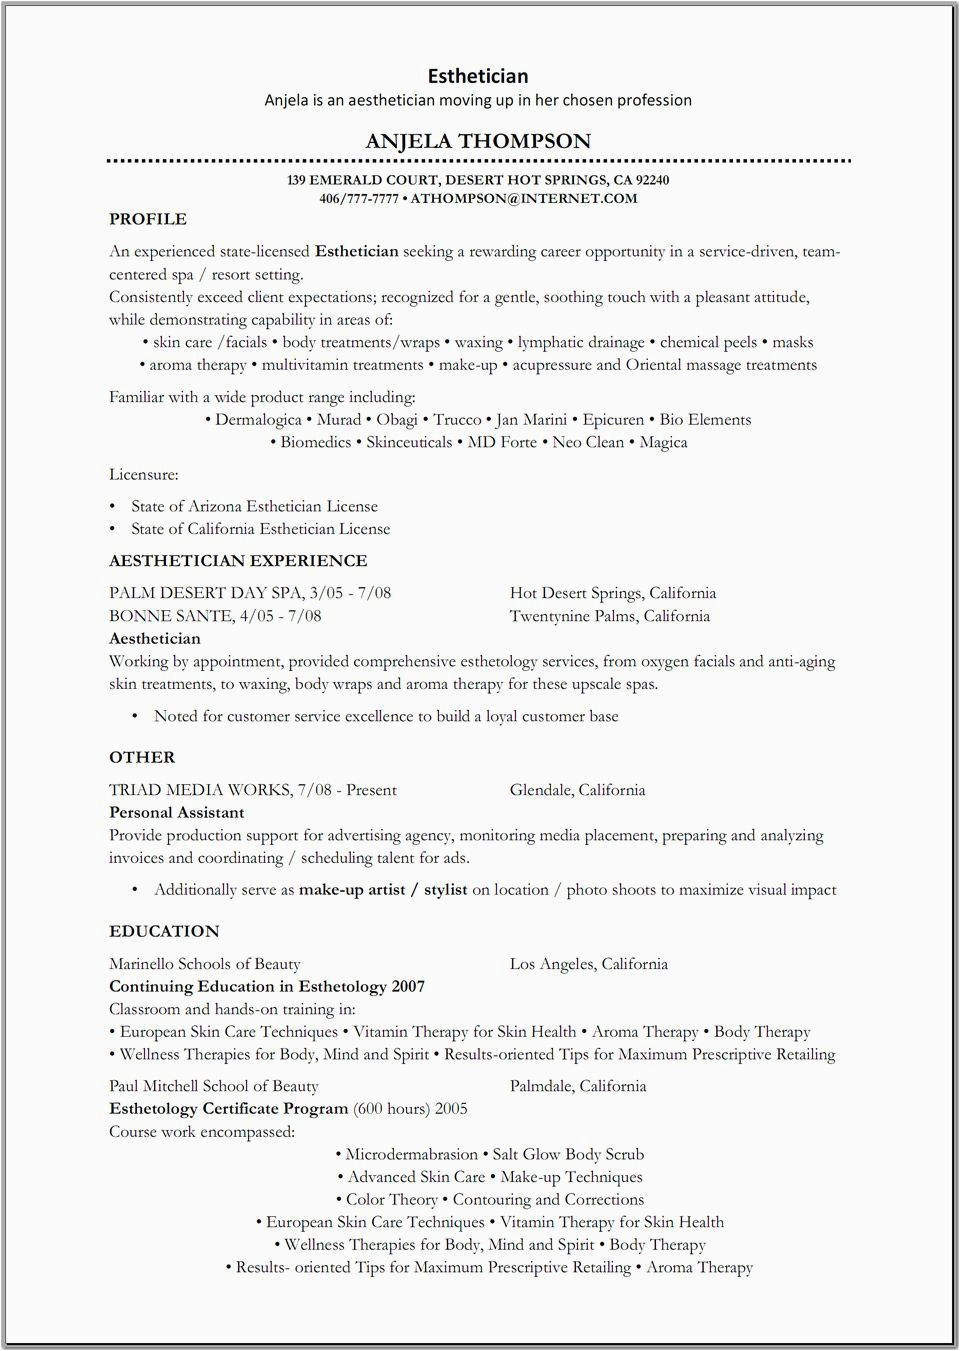 Sample Cover Letter for Esthetician Resume Esthetician